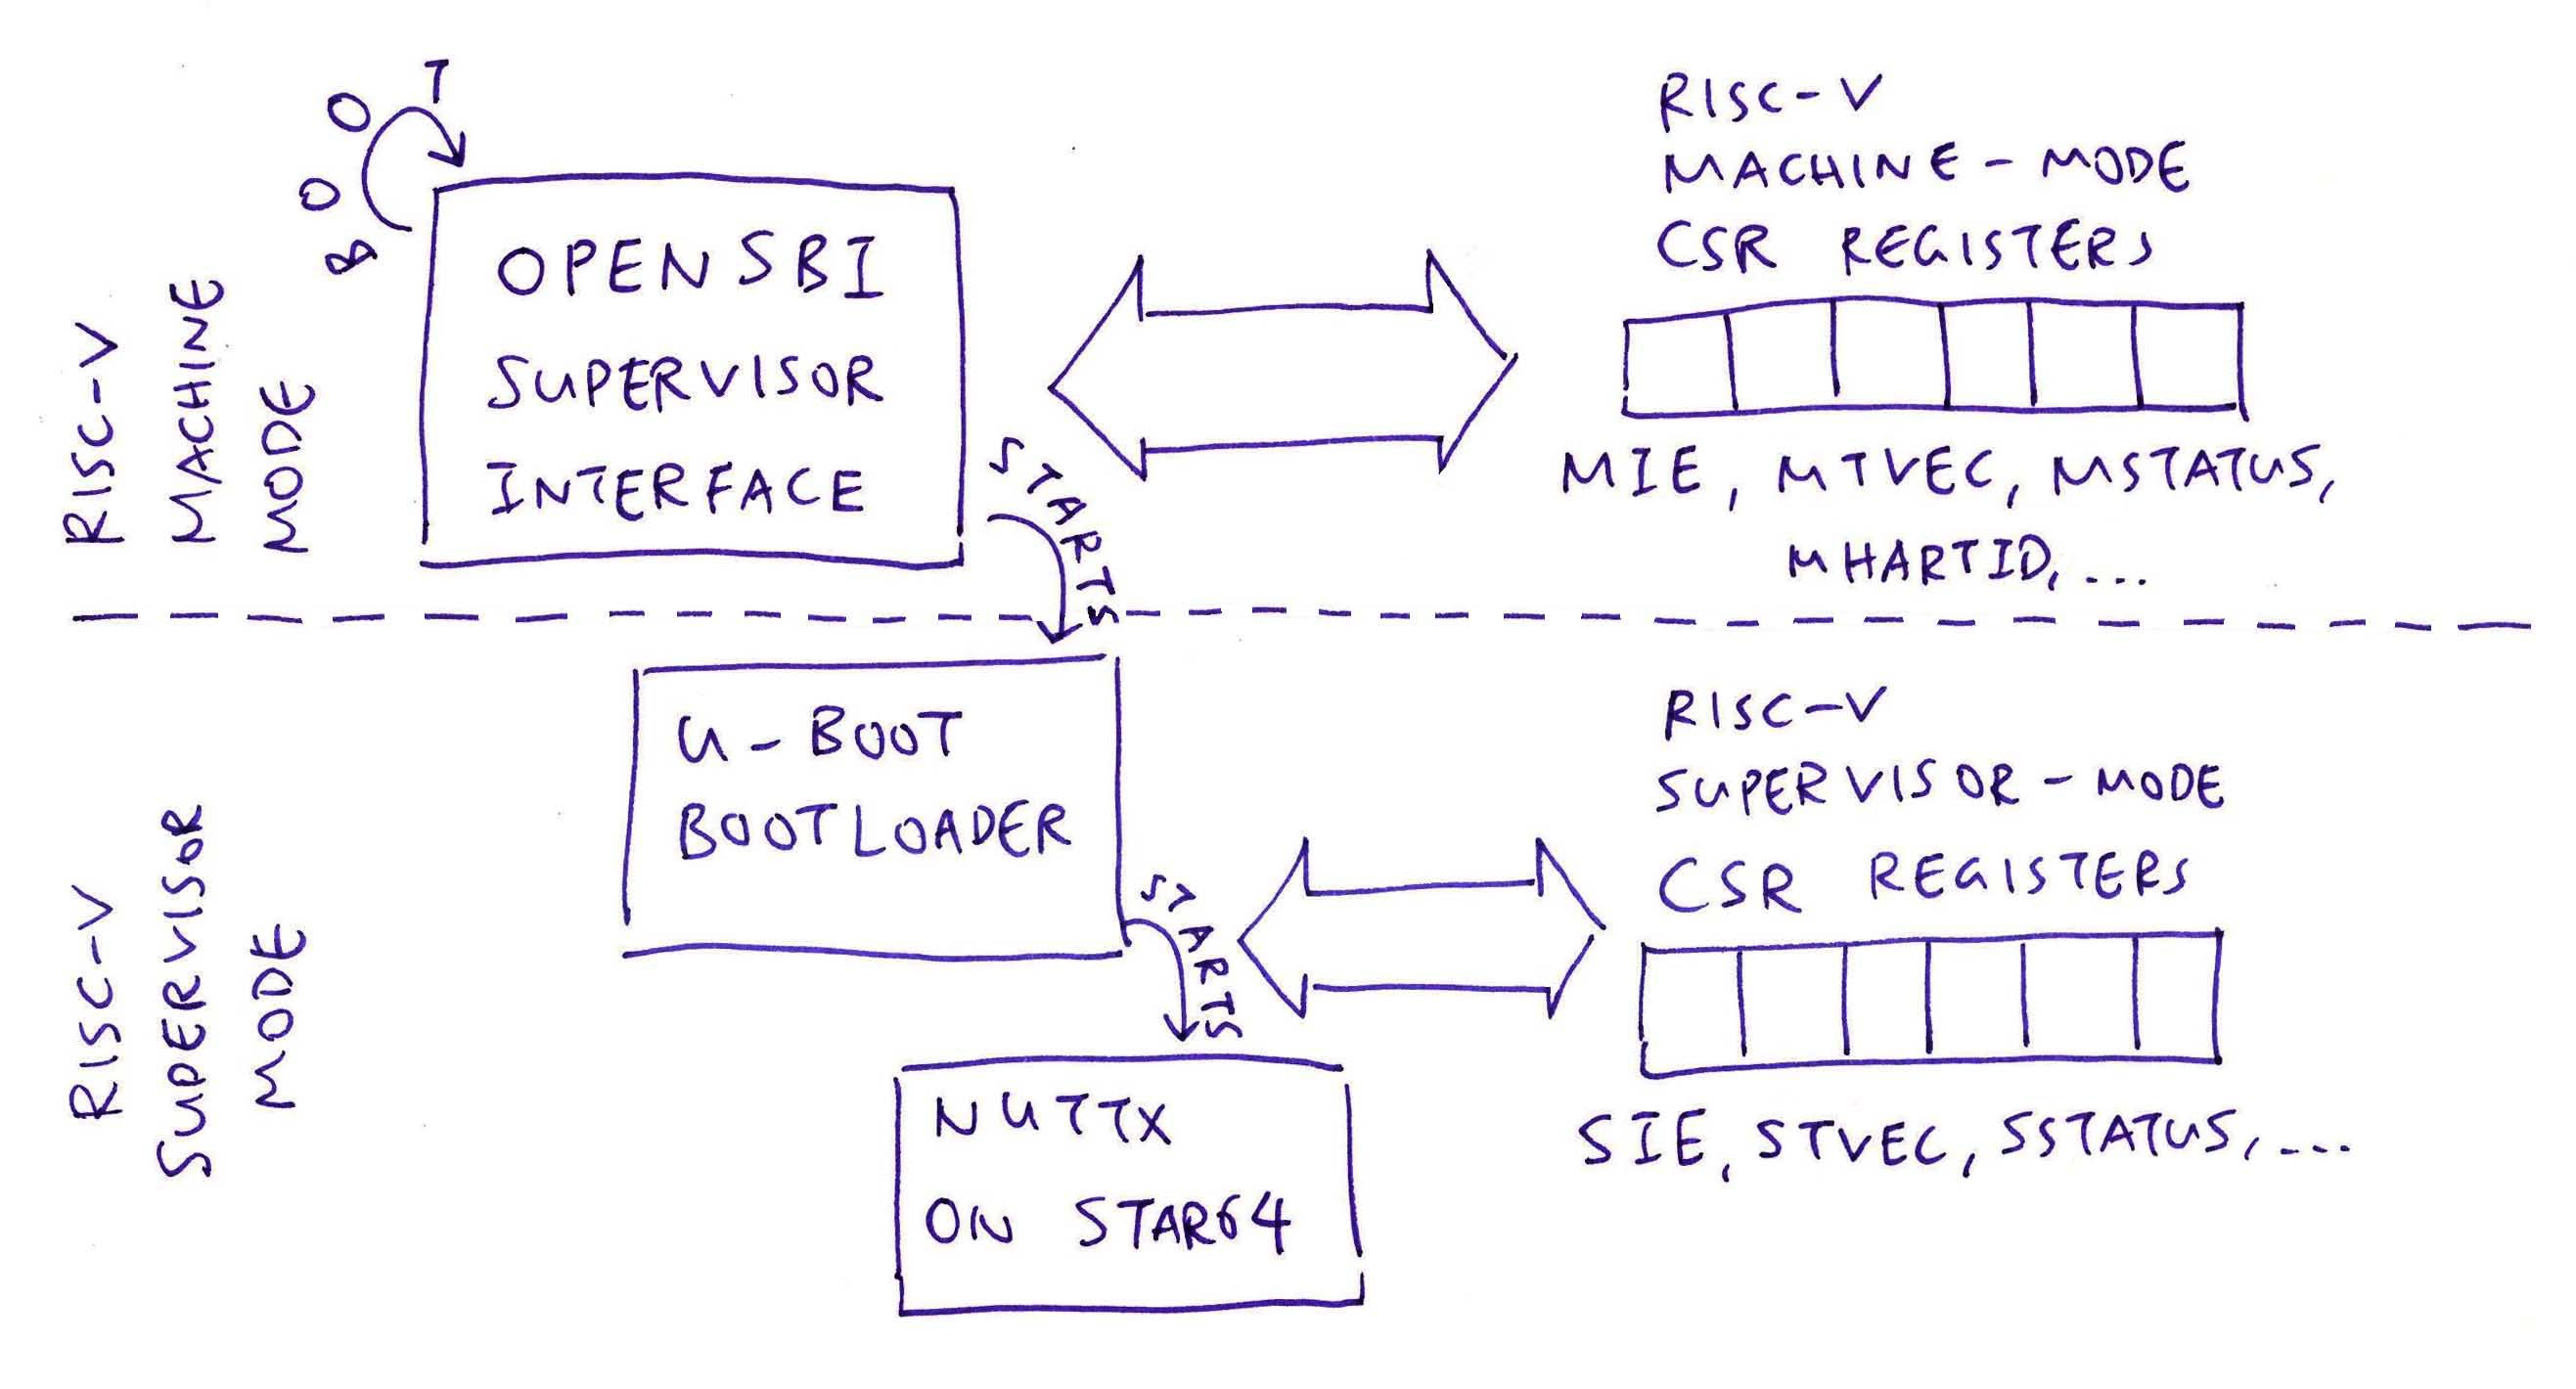 OpenSBI runs in RISC-V Machine Mode